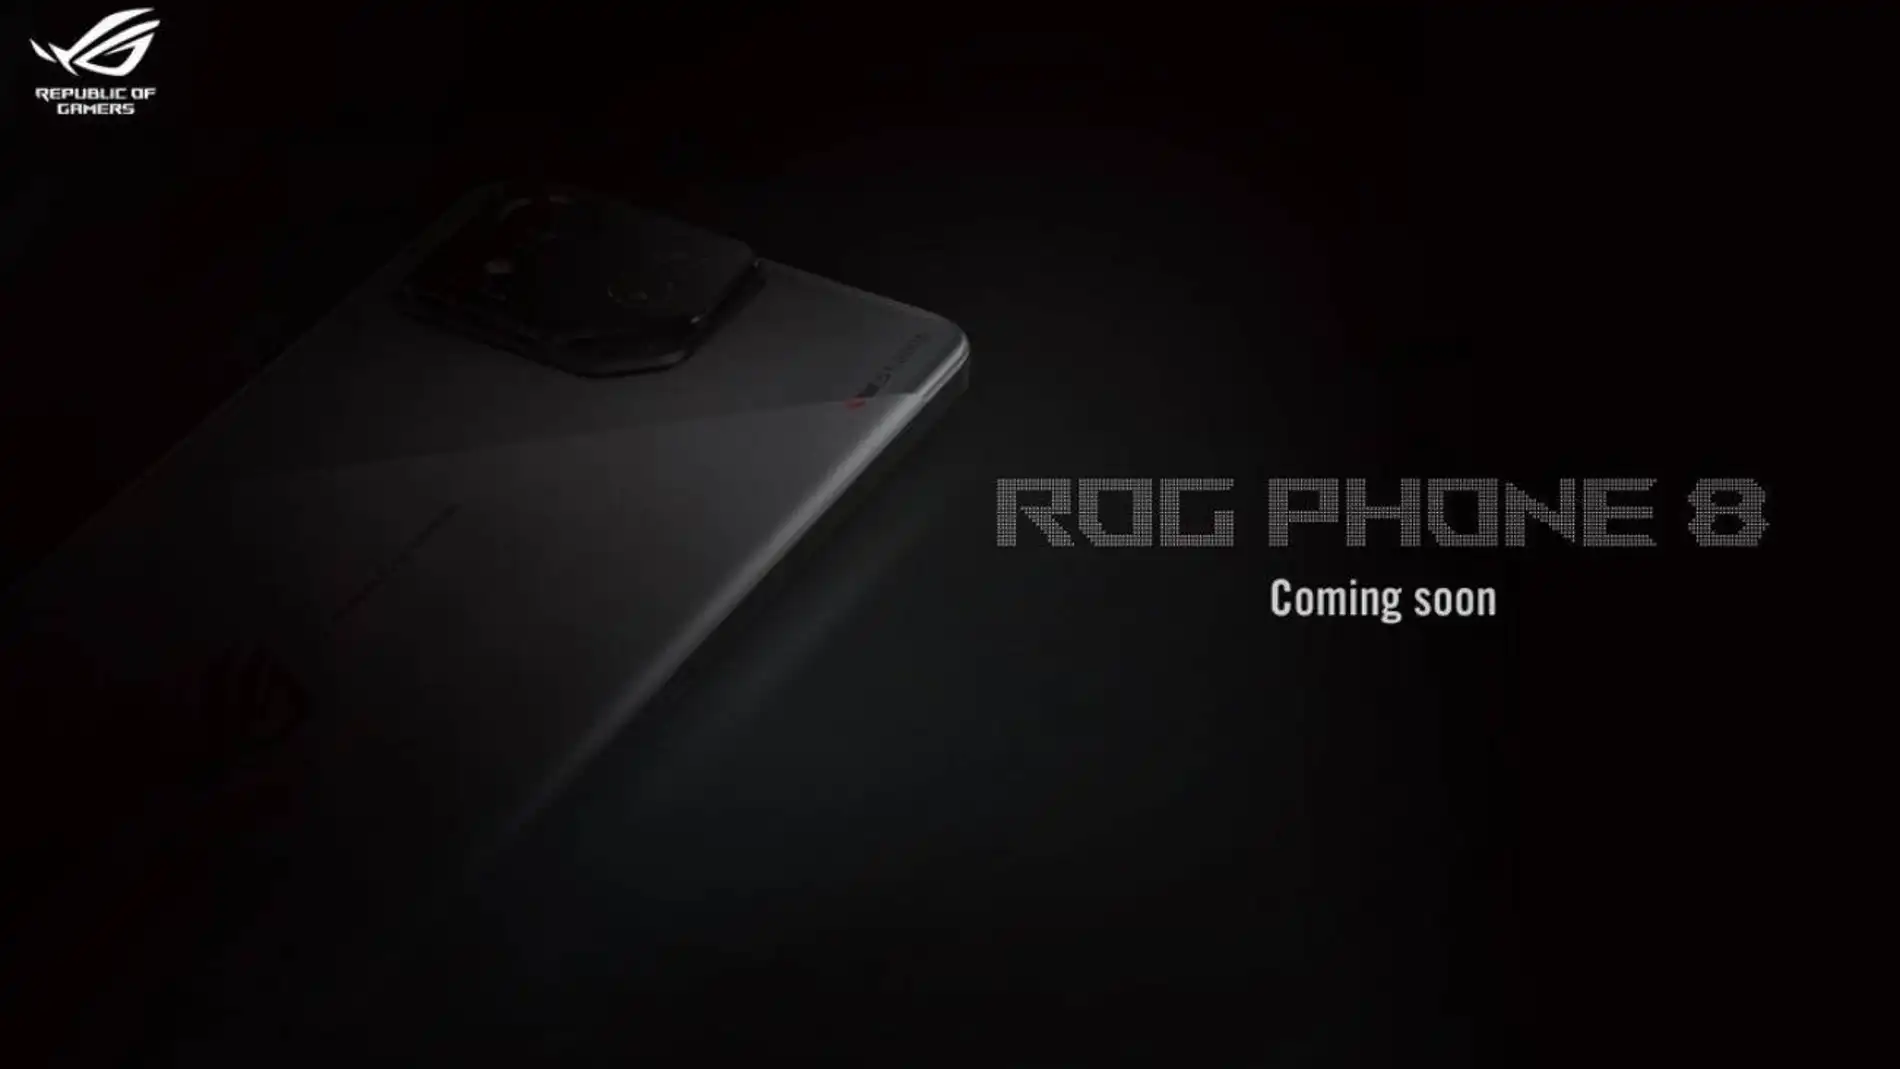 ASUS ROG Phone 8 está cada vez más cerca: qué esperar